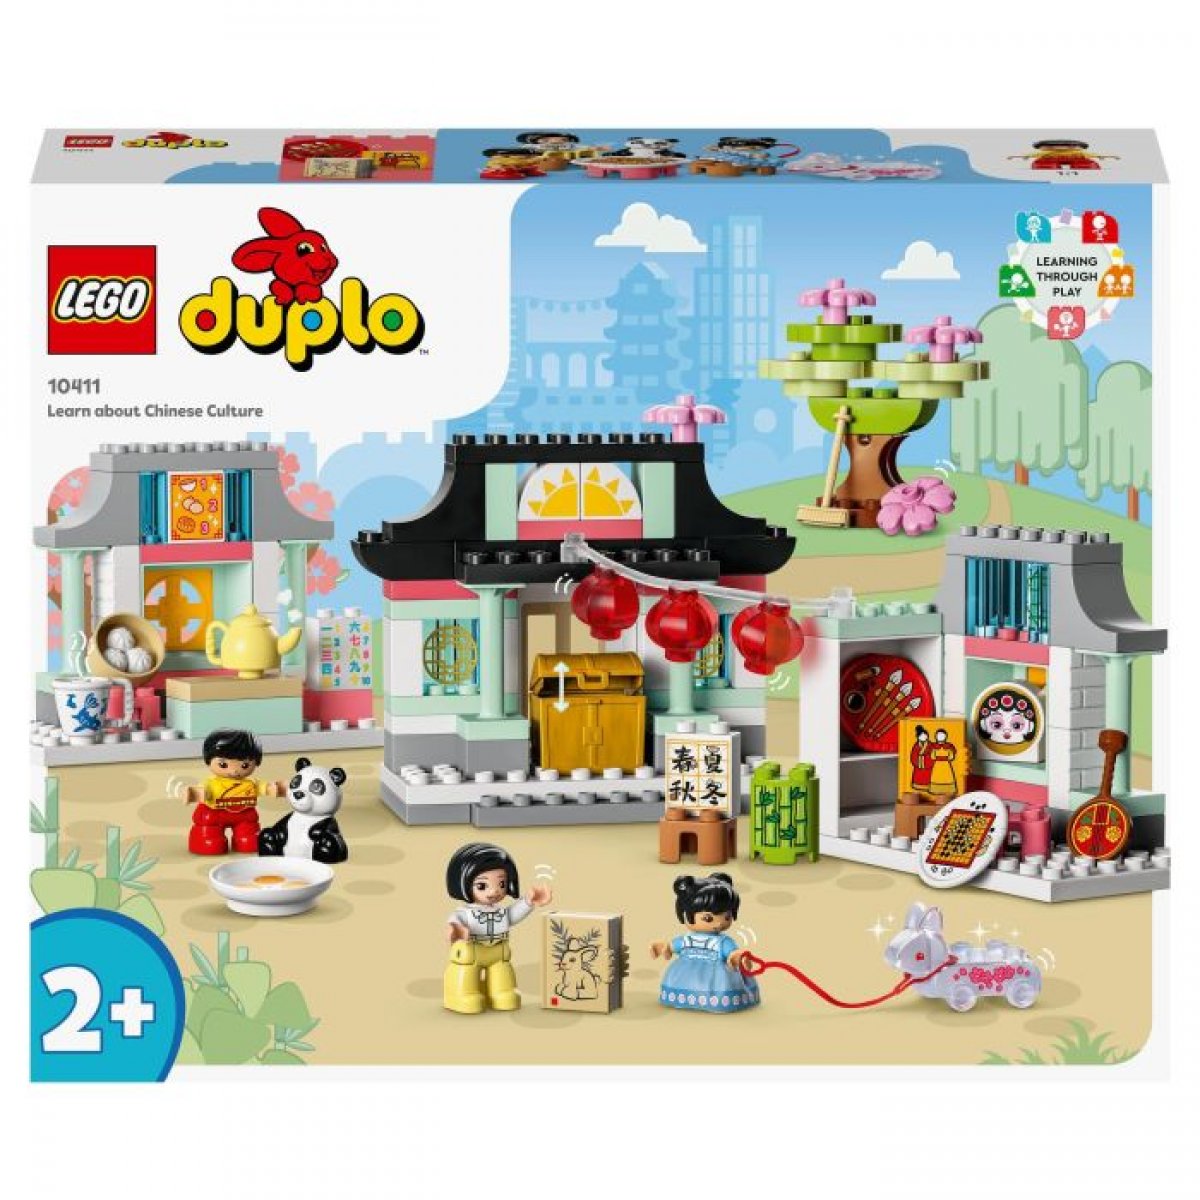 LEGO 10411 - DUPLO Lerne etwas über die chinesische Kultur